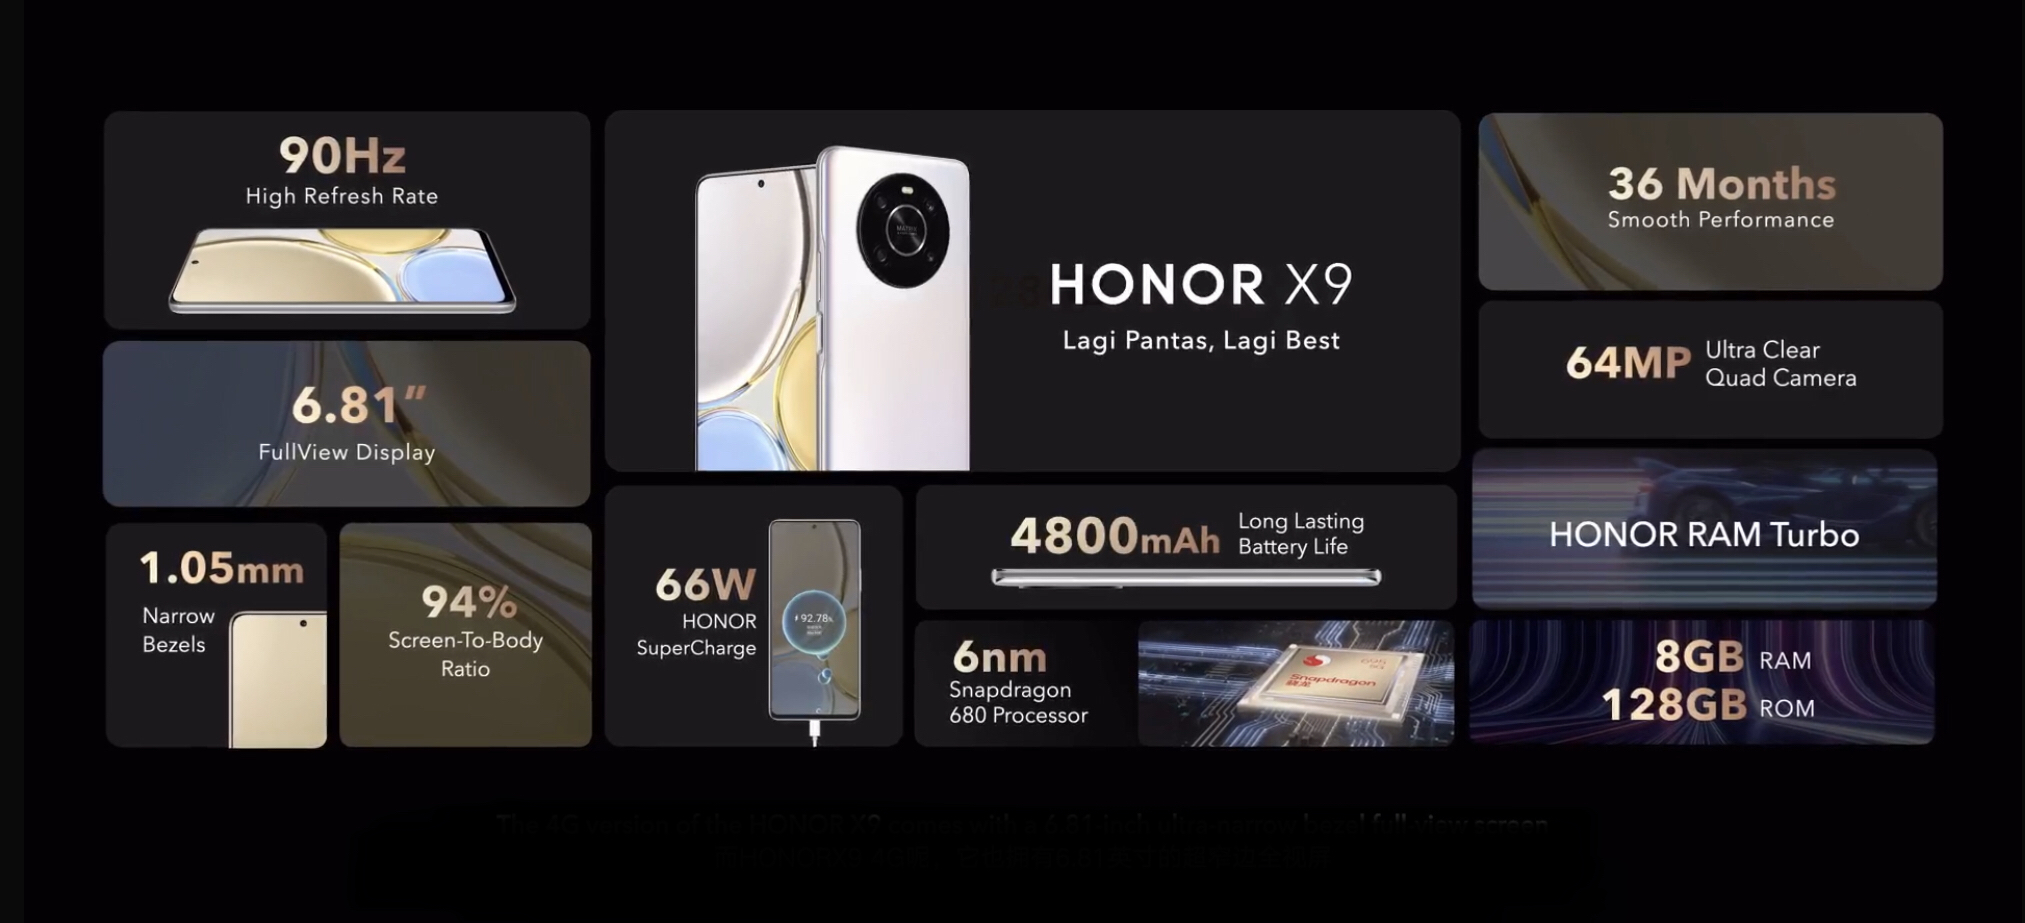 Honor X9 5G kini rasmi di Malaysia skrin 120Hz dan Snapdragon 695 pada harga RM 1,299 15